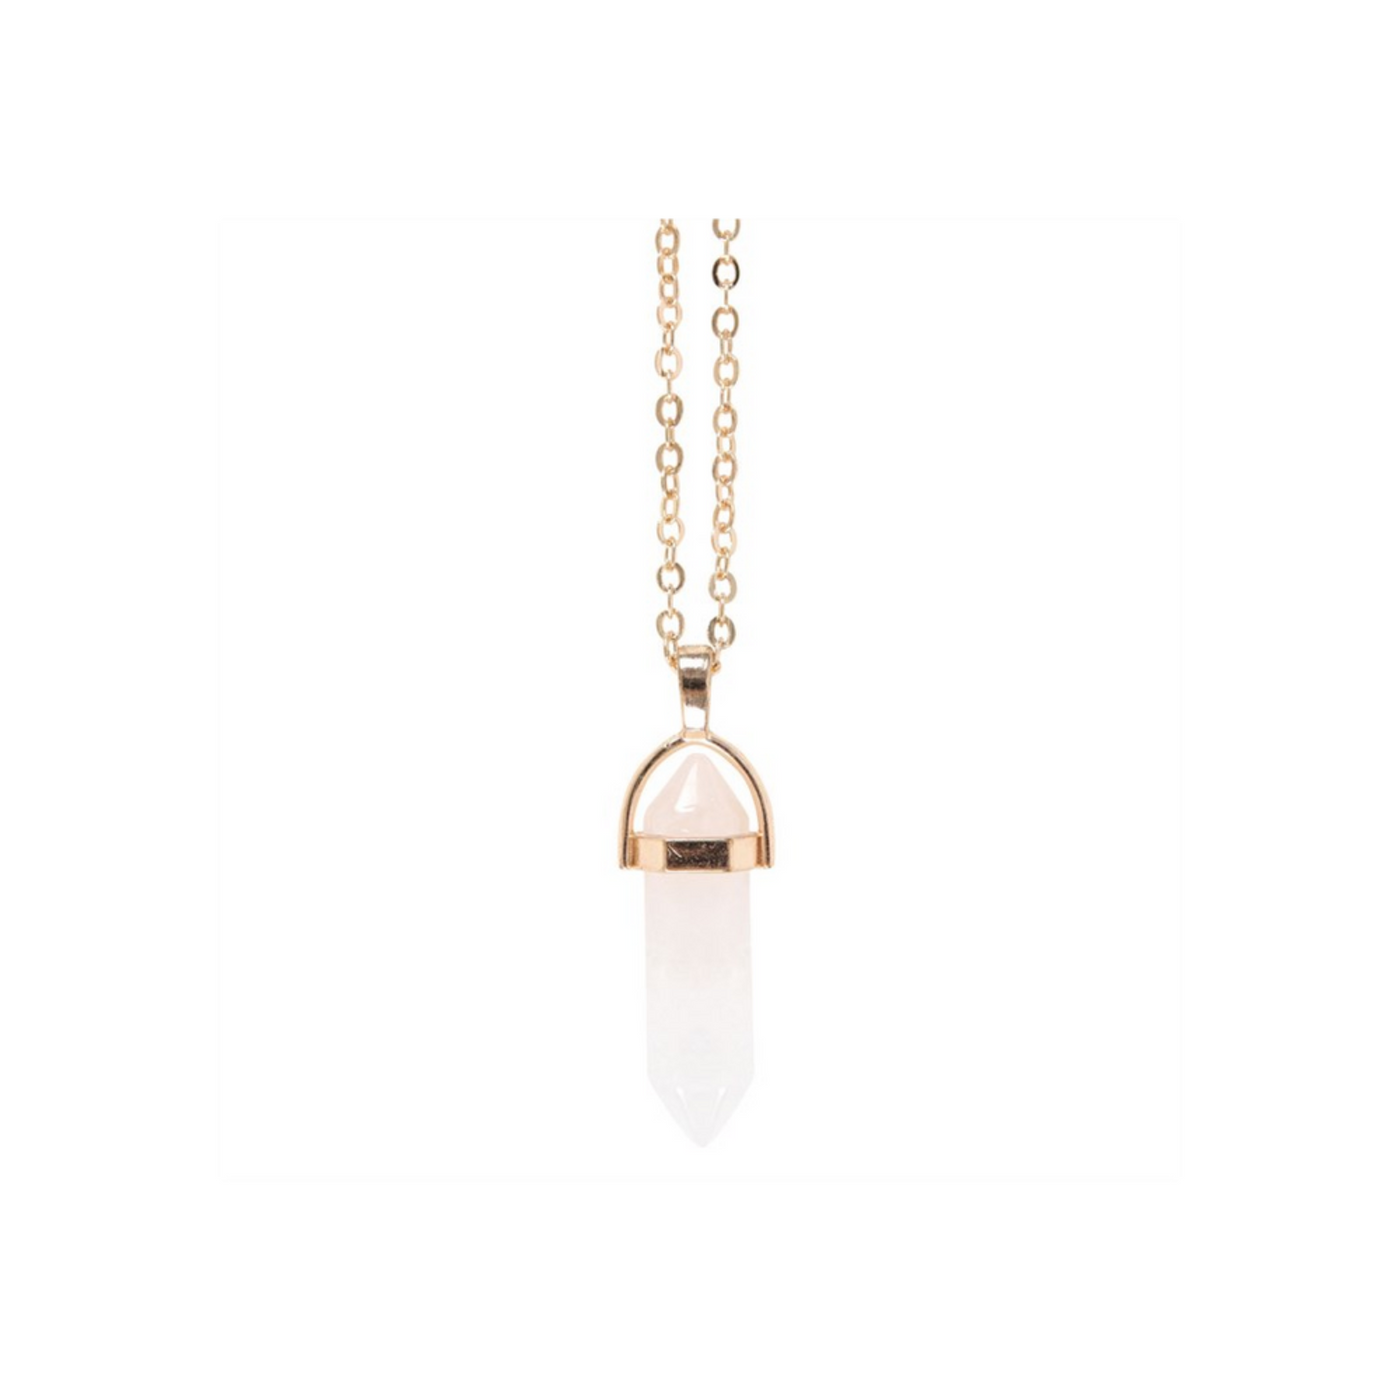 Clear Quartz Obelisk Gemstone Crystal Golden Necklace Card.